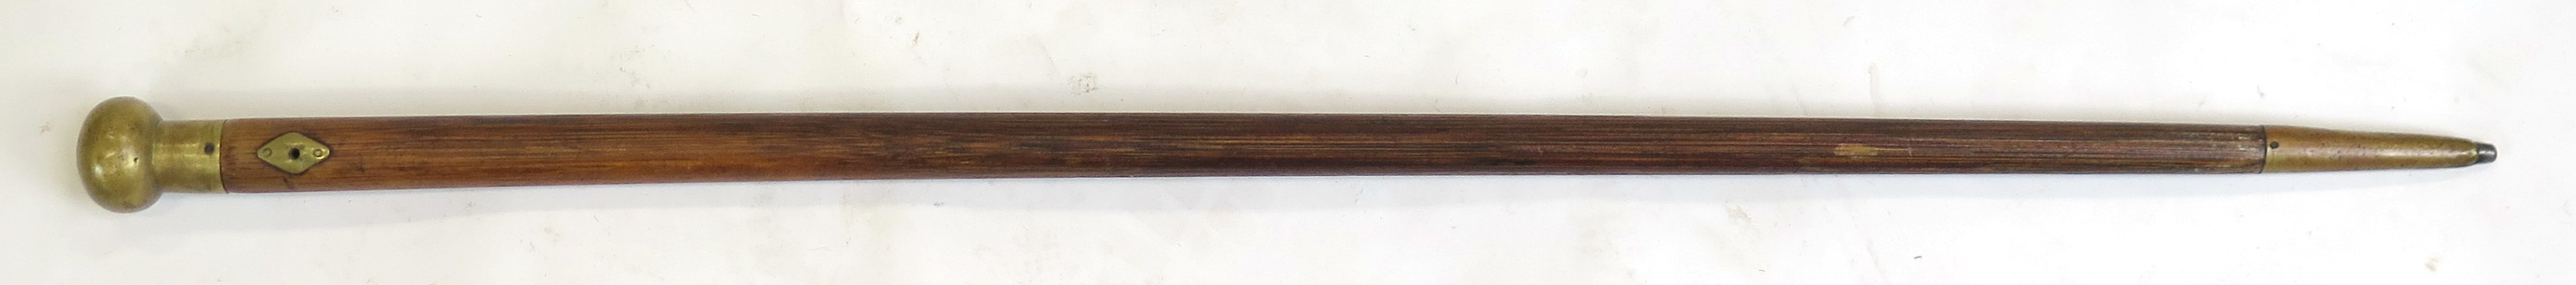 Käpp, trä med mässingbeslag, 1800-talets mitt, _11427a_lg.jpeg